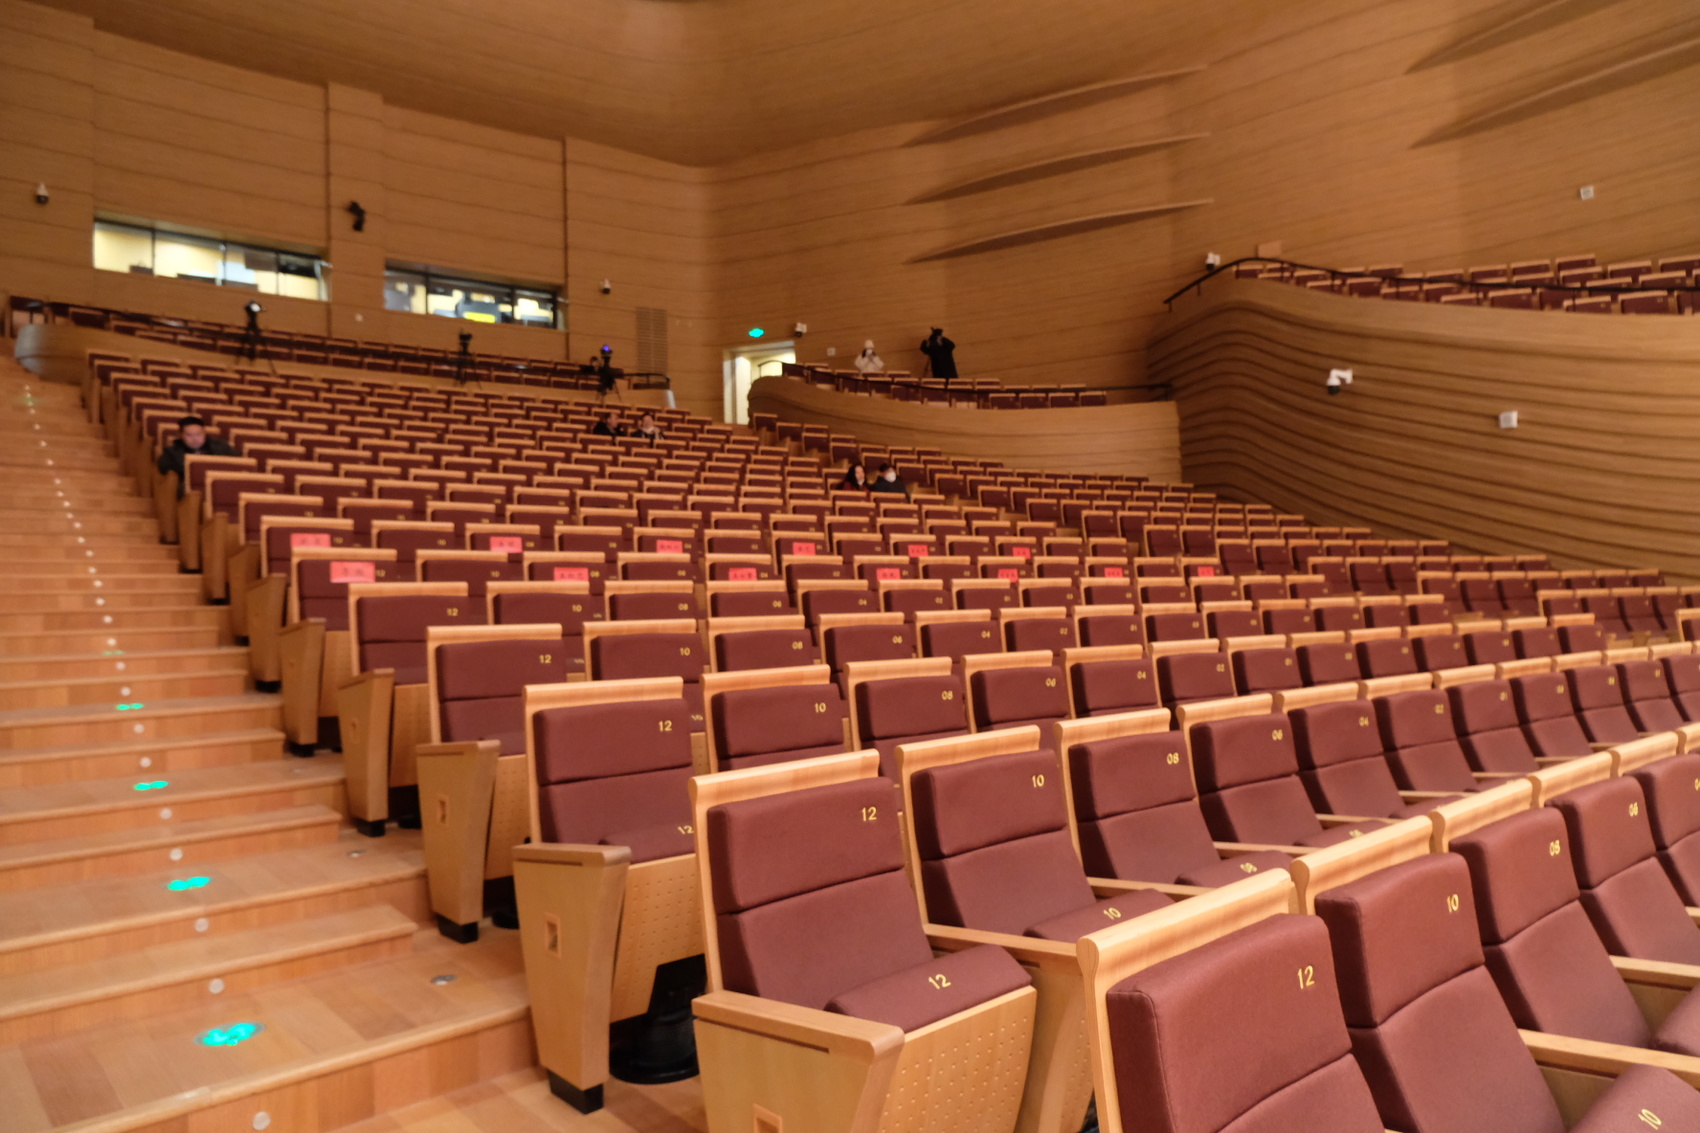 音乐厅座椅舞台据了解,四川省文化艺术中心坐落在成都市梓州大道辅路